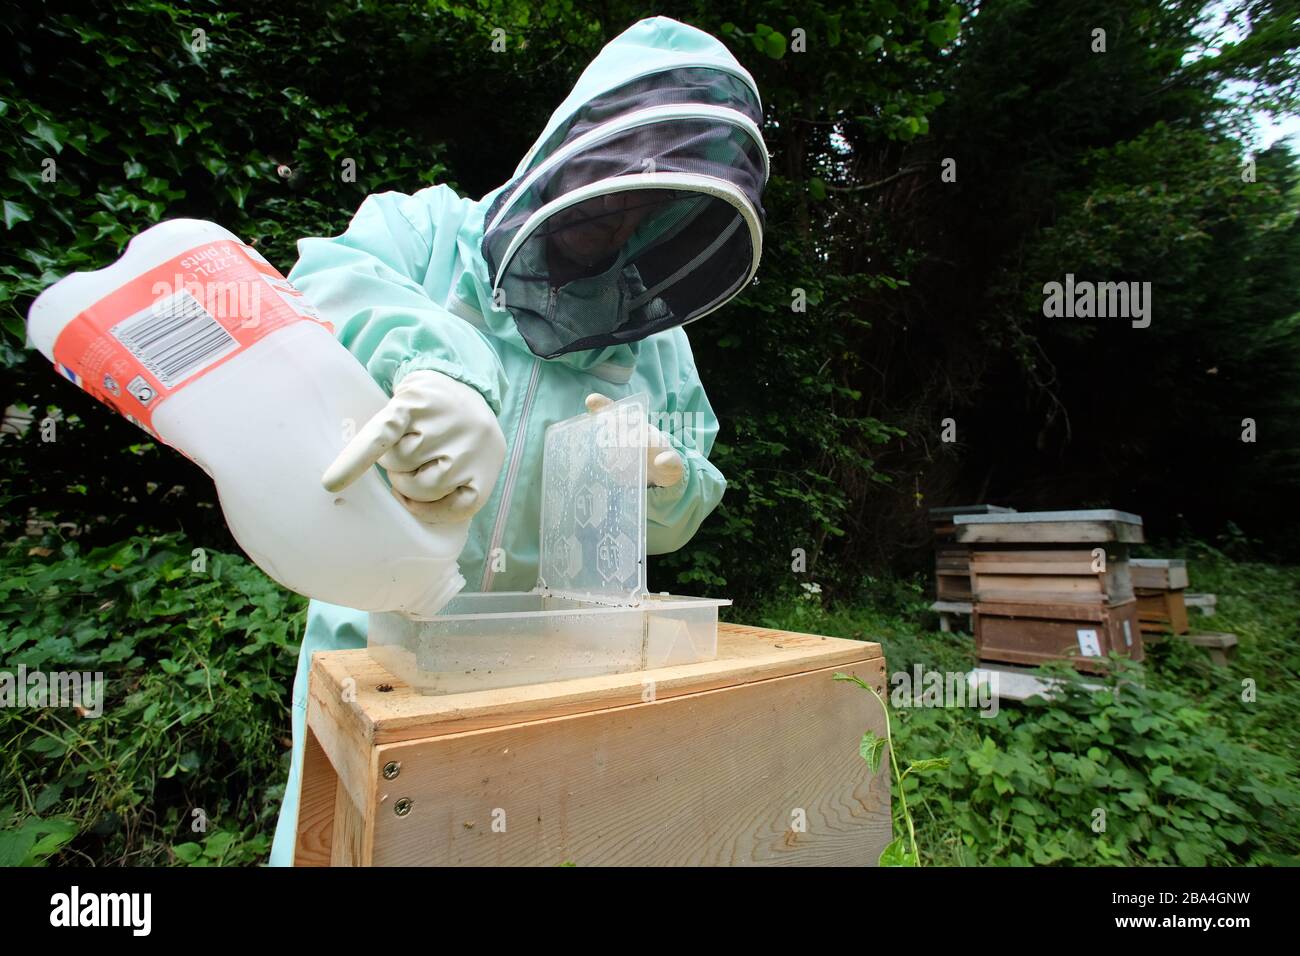 Apiculteur amateur nourrissant du sucre pour compléter la nourriture pour les ruches. ROYAUME-UNI Banque D'Images